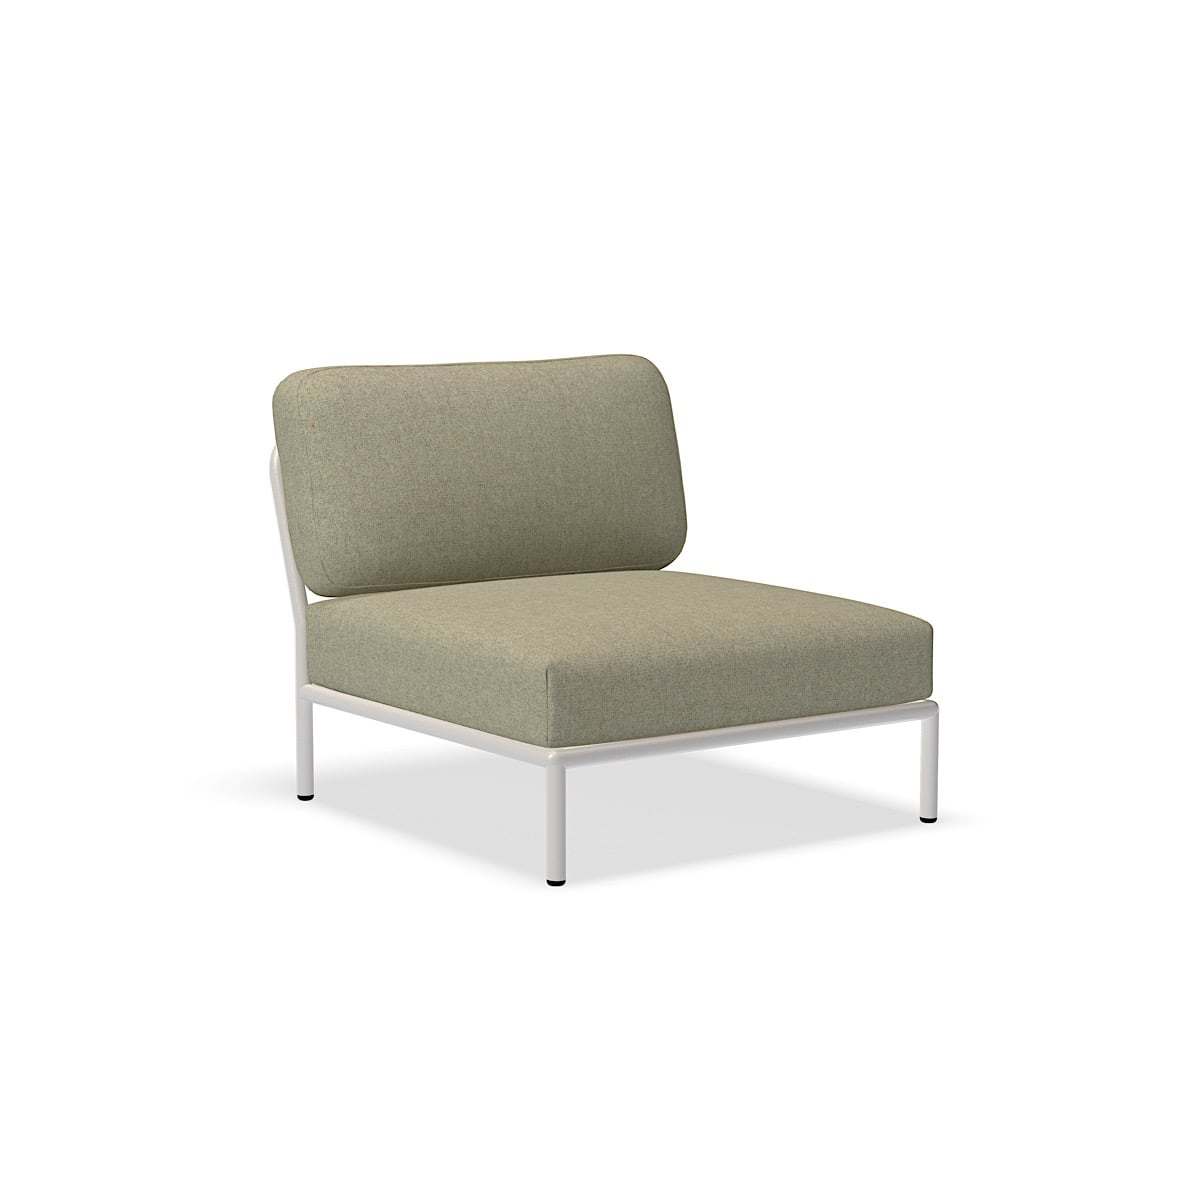 الكرسي - 12205-4743 - كرسي ، موس (HERITAGE) ، هيكل أبيض